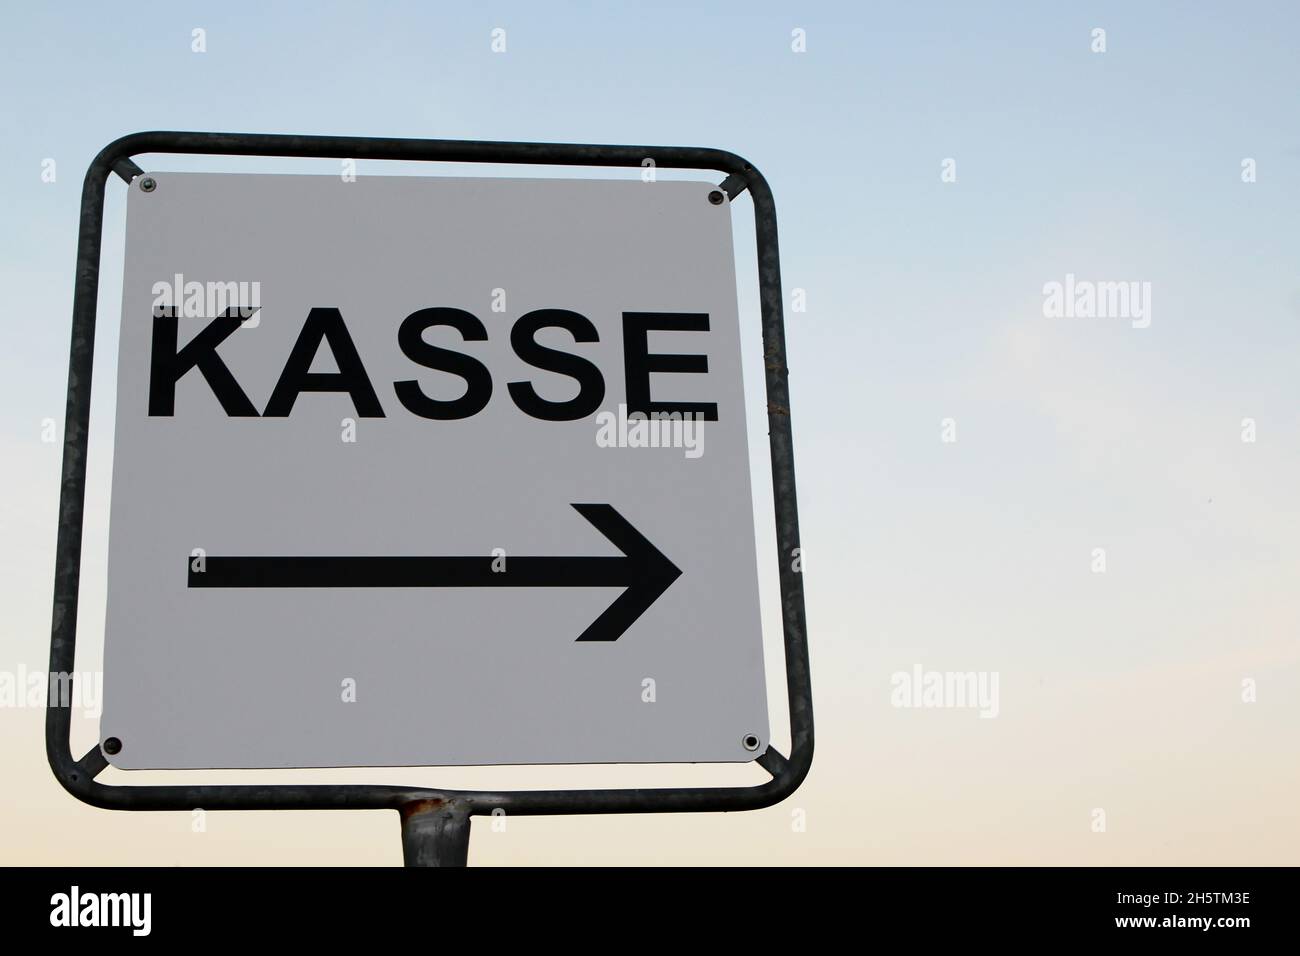 Ein Weißes Schild mit schwarzer Schrift 'Kasse' mit Pfeil in Richtung rechts. Rügen, Alemania. Foto de stock